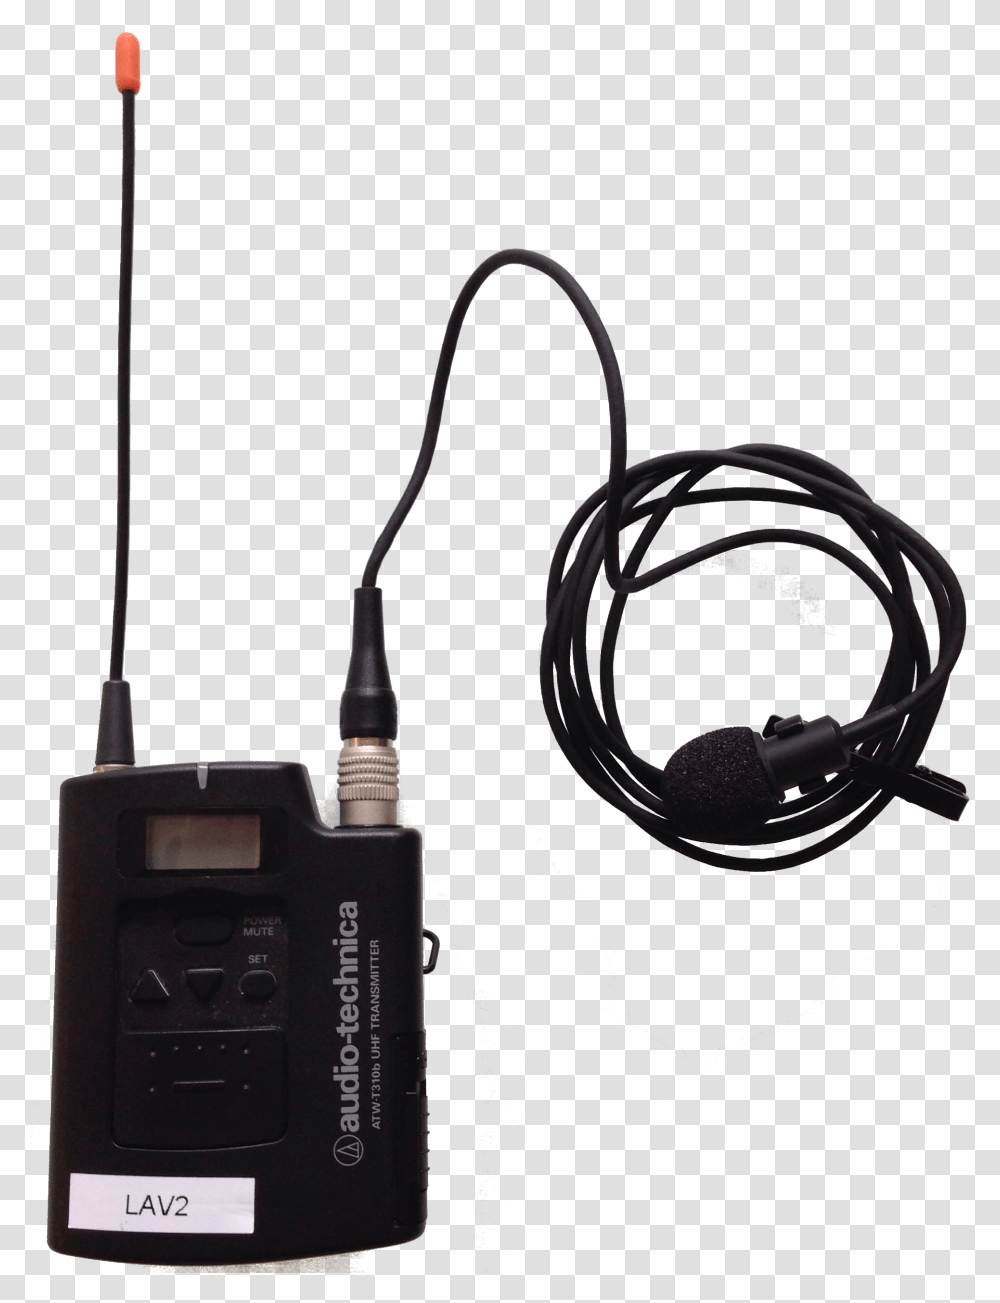 File Lav2 Se Llama El Microfono Que Usan, Adapter, Plug Transparent Png